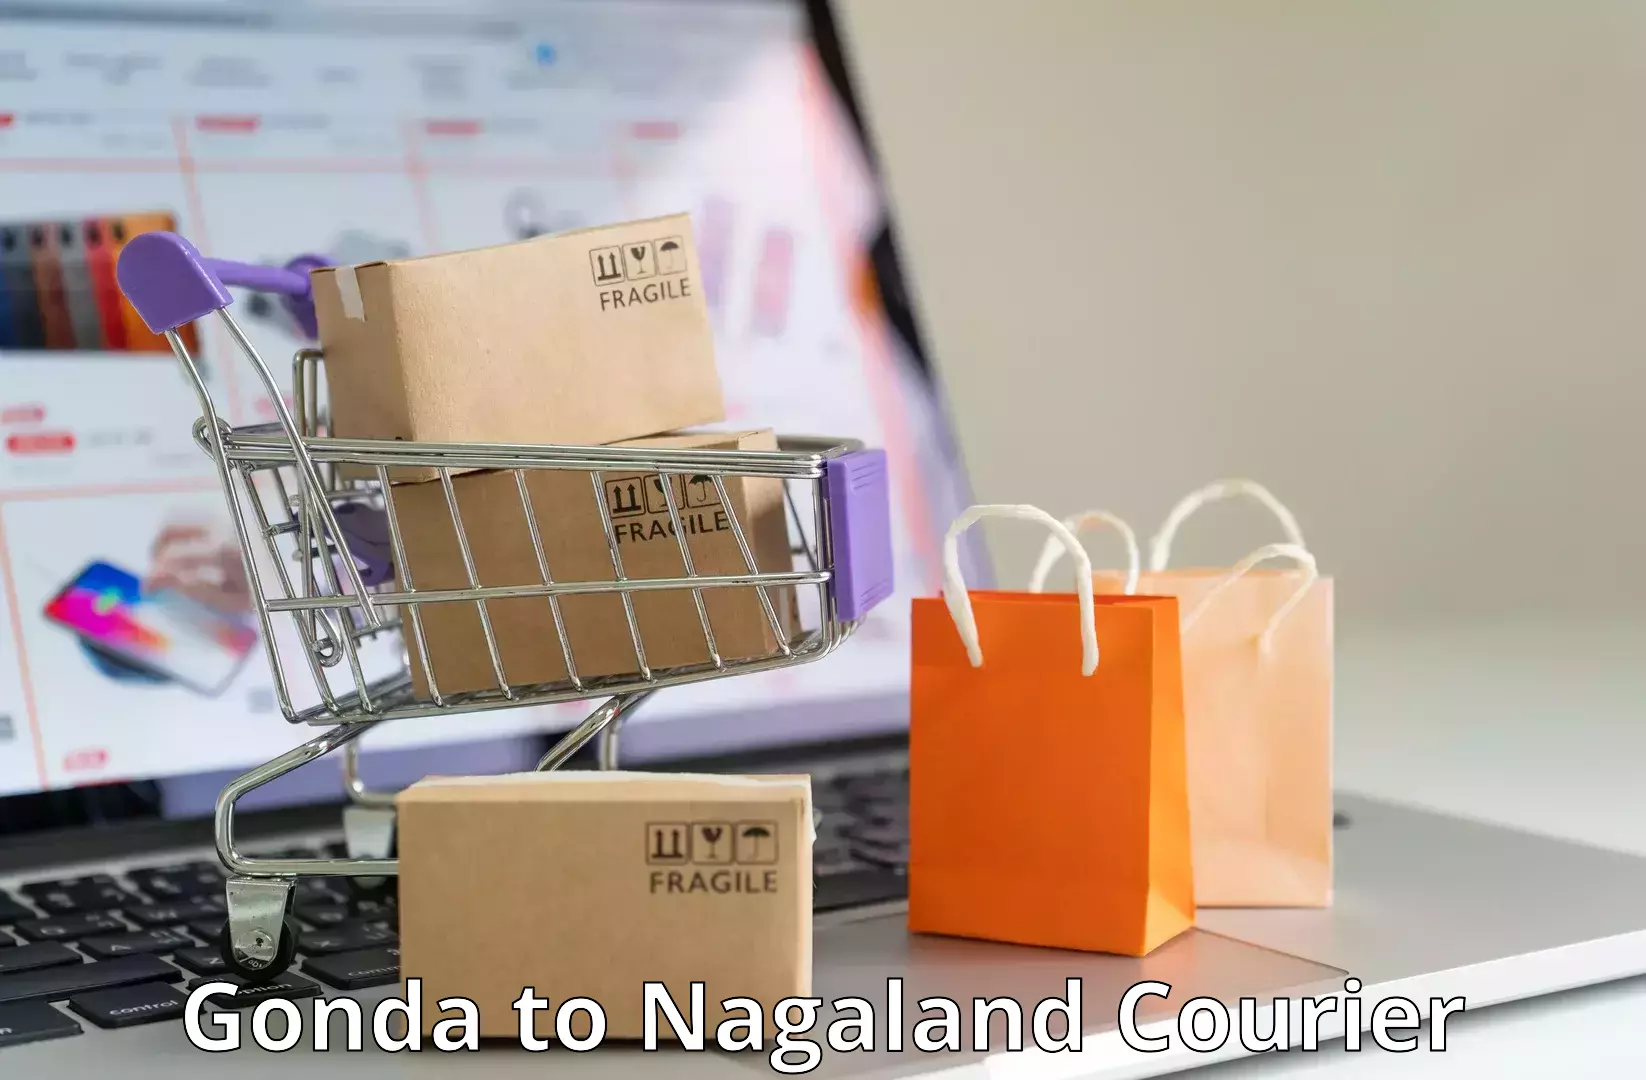 Regular parcel service Gonda to NIT Nagaland